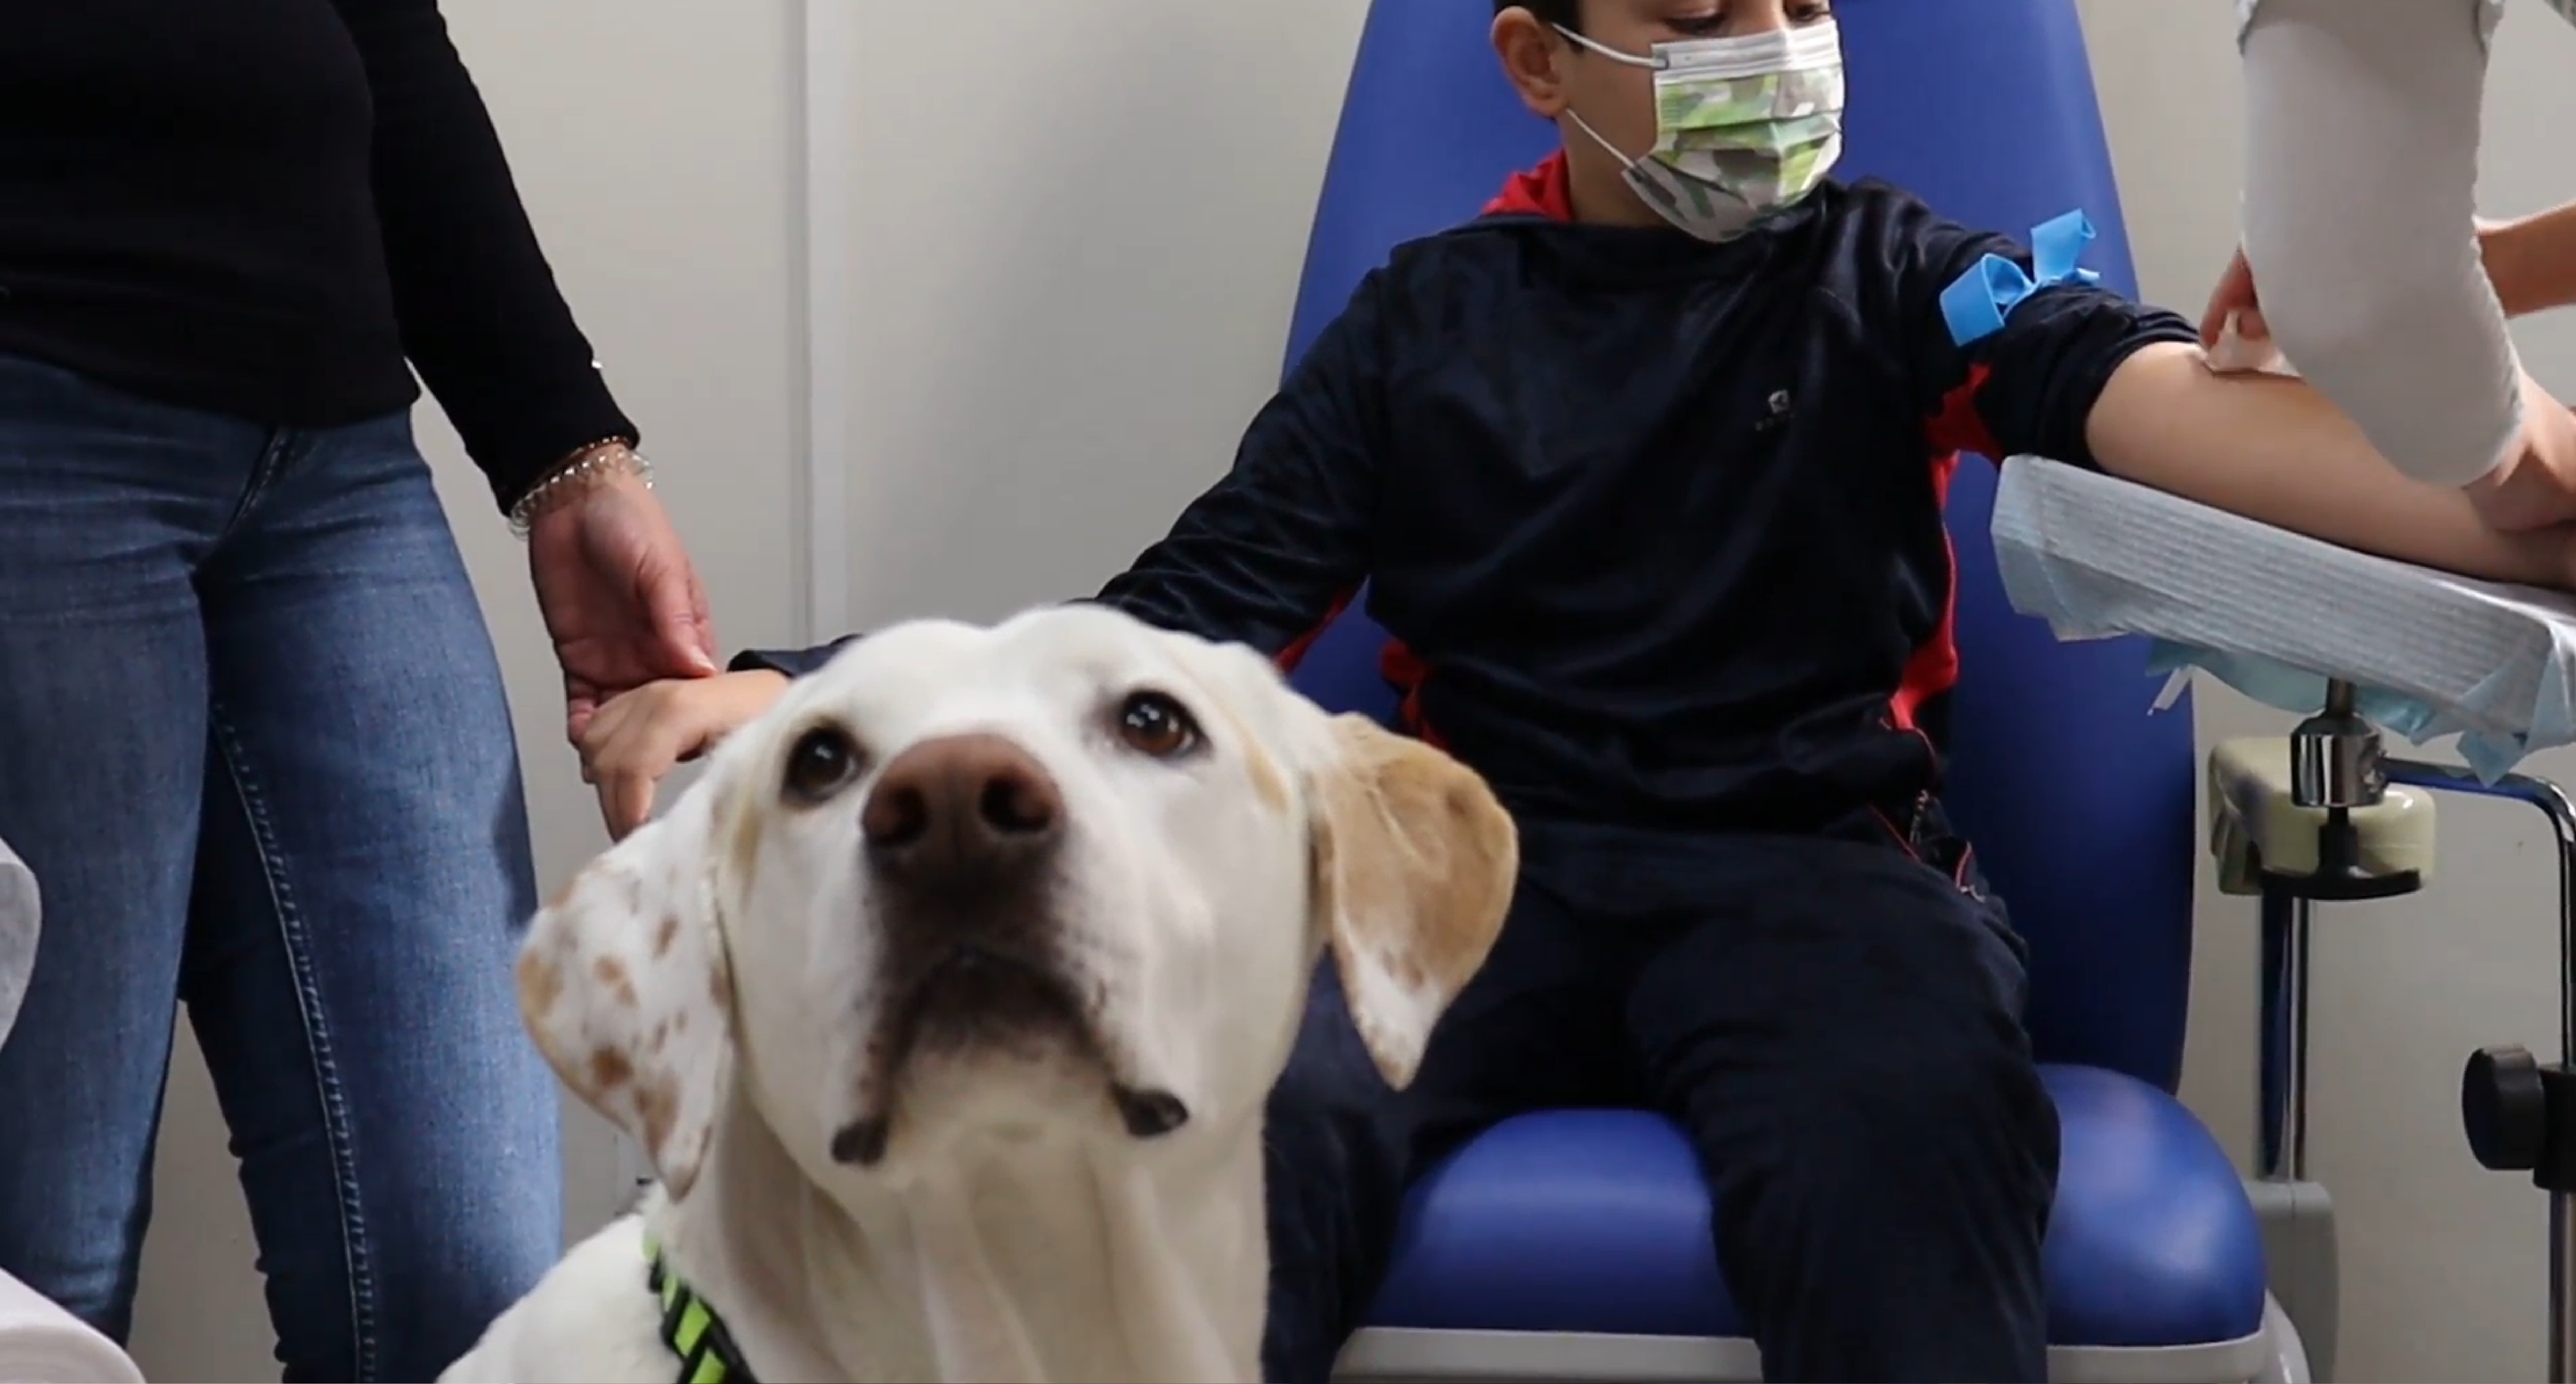 La unidad de terapia canina del Hospital Virgen de las Nieves acompaña a los peques que se van a extraer sangre